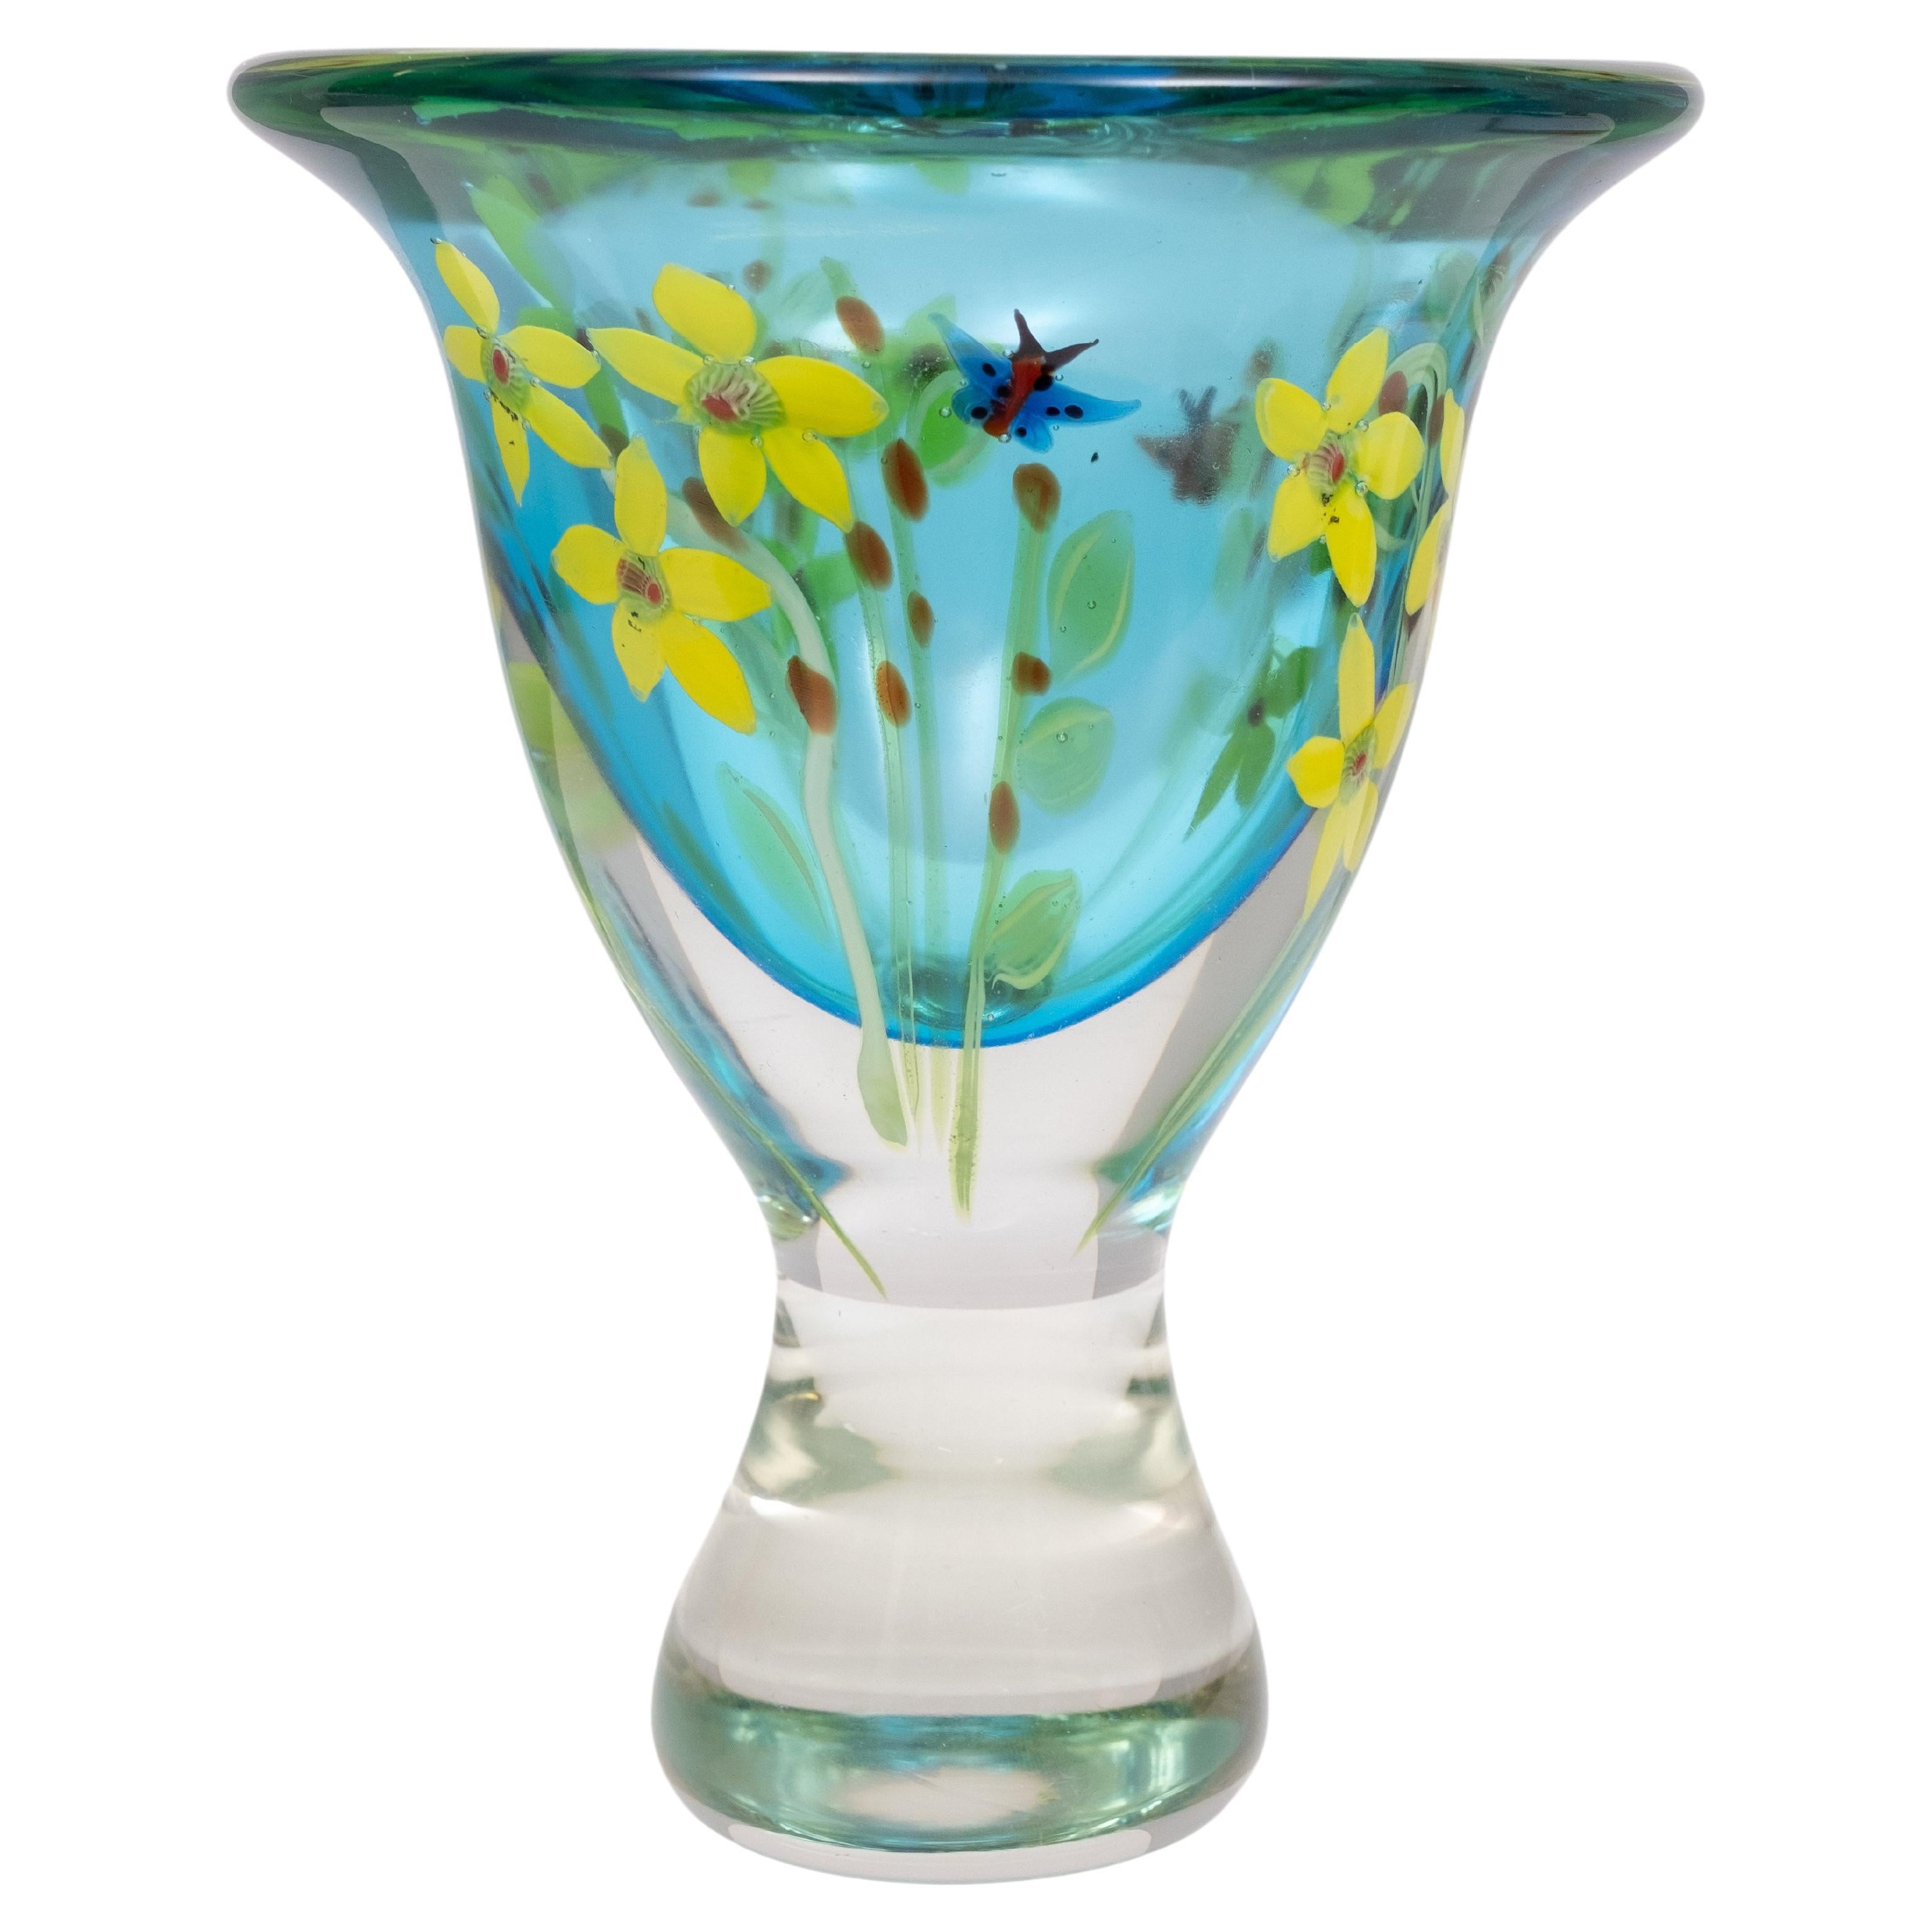 Berit Johansson Art Glass Vase by Murano 1970s Sweden 